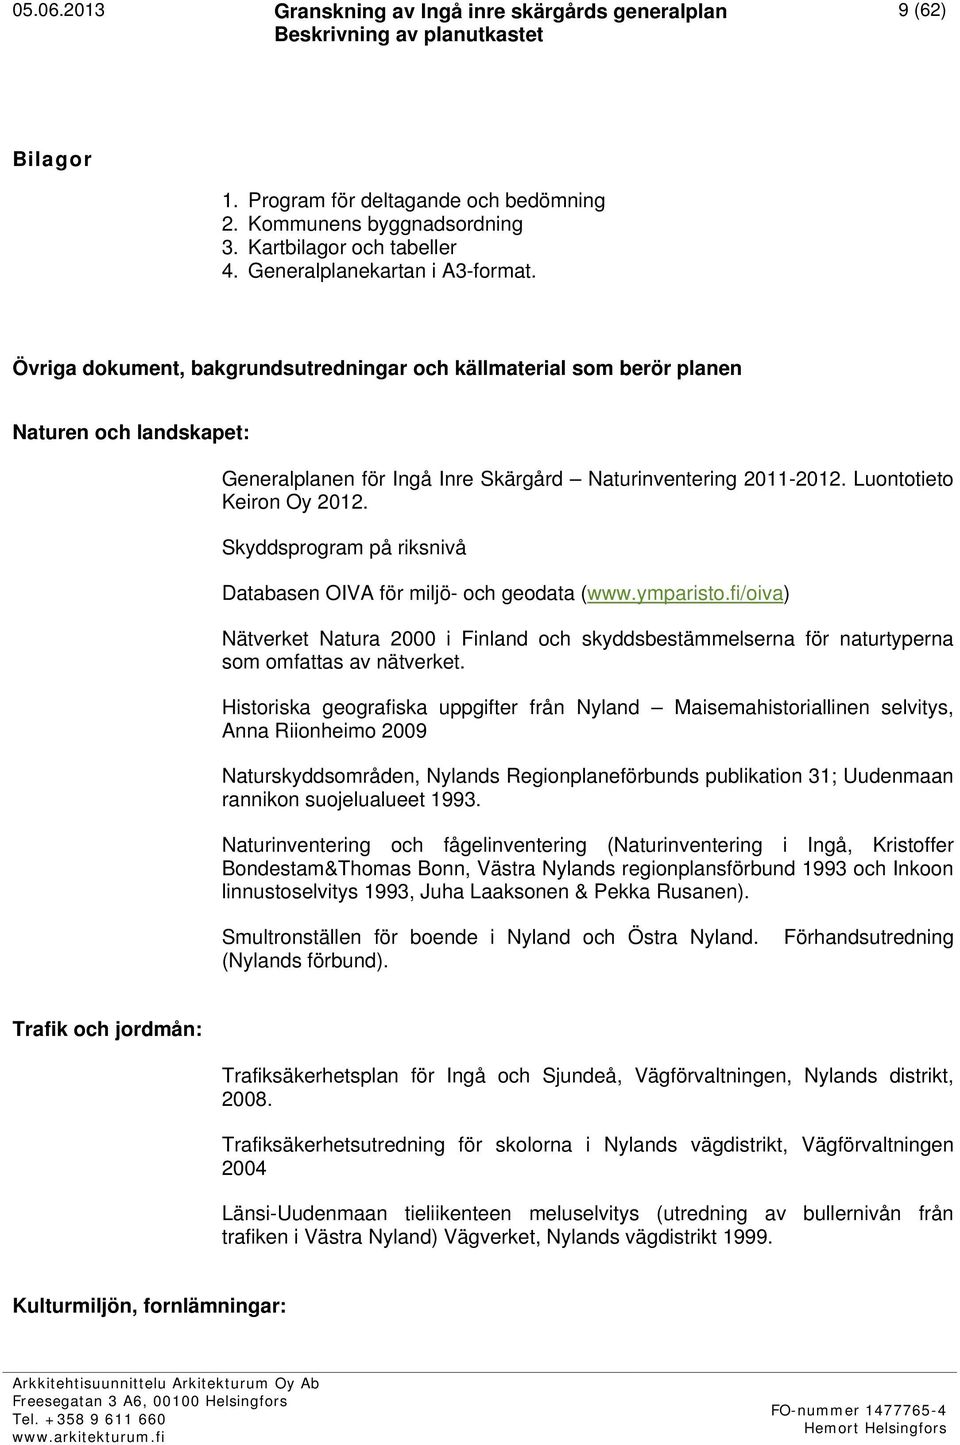 Skyddsprogram på riksnivå Databasen OIVA för miljö- och geodata (www.ymparisto.fi/oiva) Nätverket Natura 2000 i Finland och skyddsbestämmelserna för naturtyperna som omfattas av nätverket.